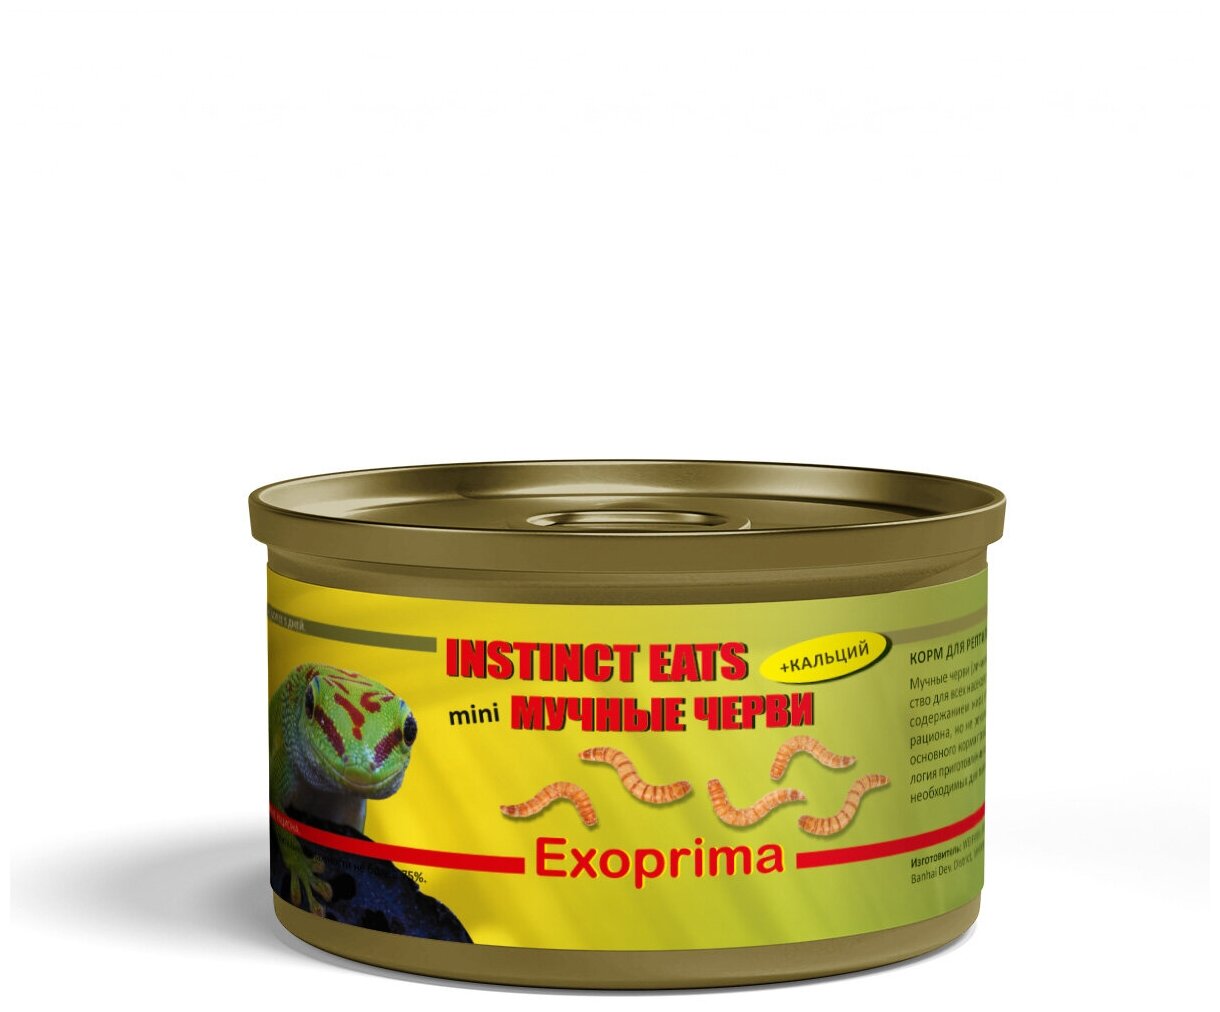 EXOPRIMA Instinct Eats Корм для рептилий консервированный "Мучные черви мини", З5гр Exoprima ExoFood - фото №3